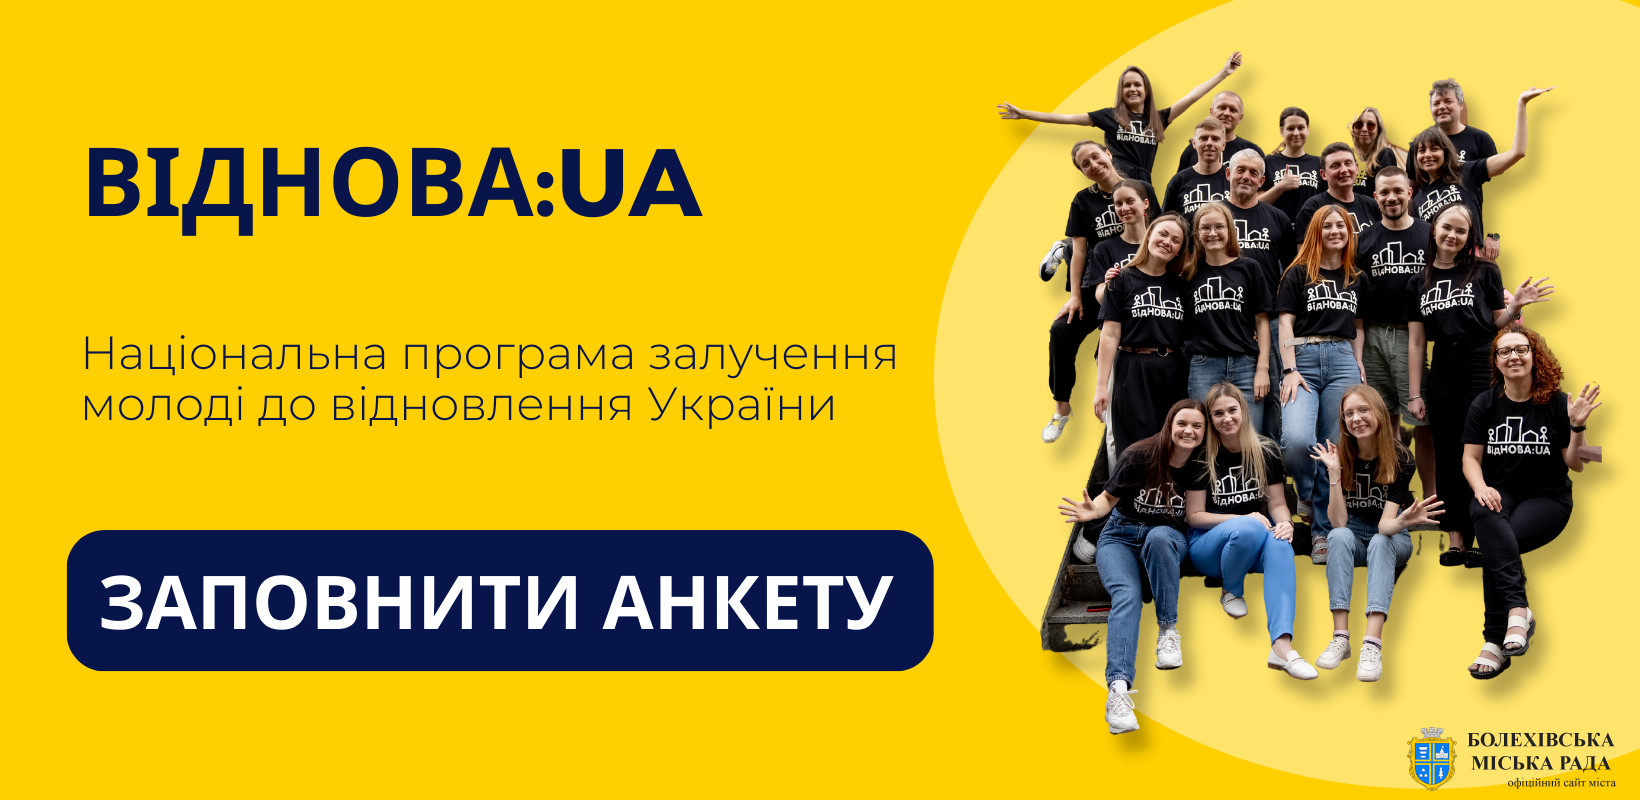 Міністерство молоді та спорту України реалізує національну програму залучення молоді до відновлення України «ВідНОВА:UA»